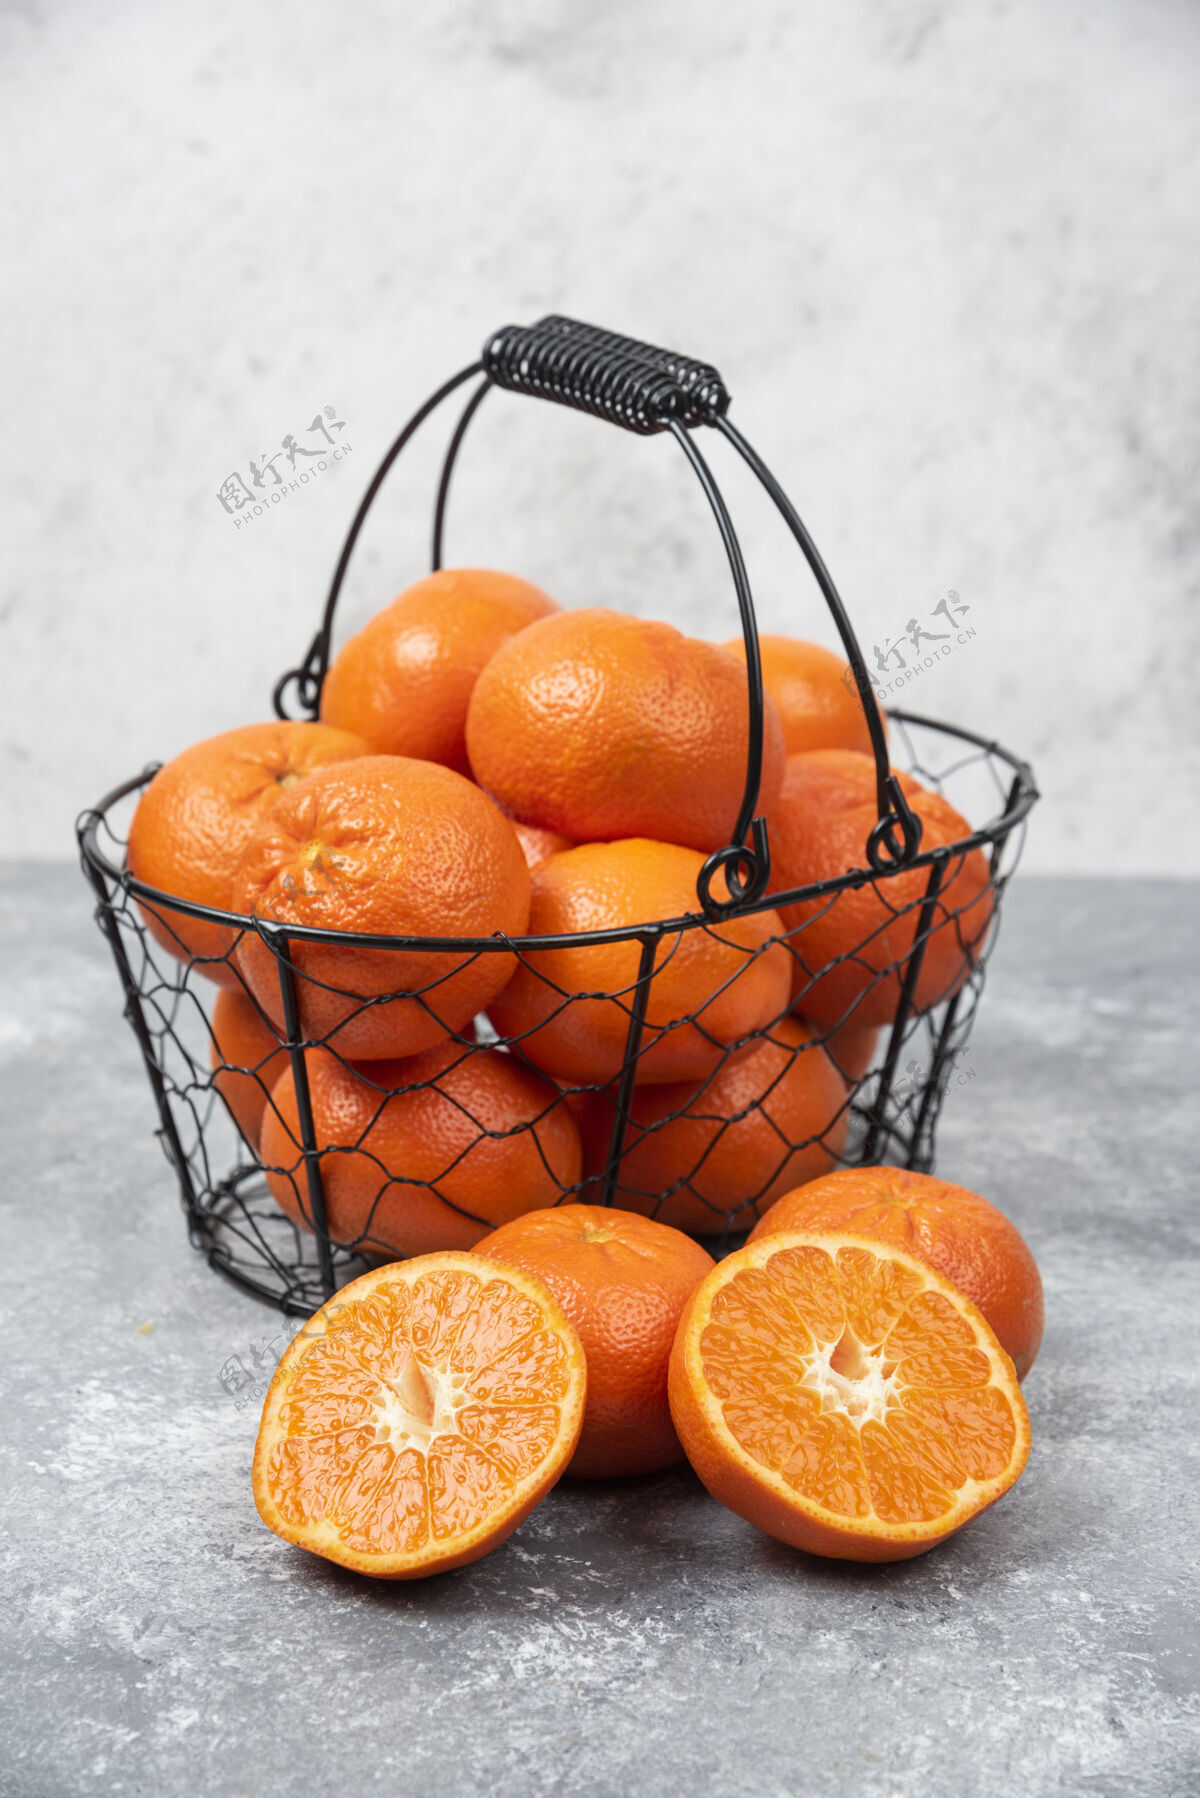 提神石桌上放着一个装满多汁橙子的金属黑色篮子柑橘异国情调热带